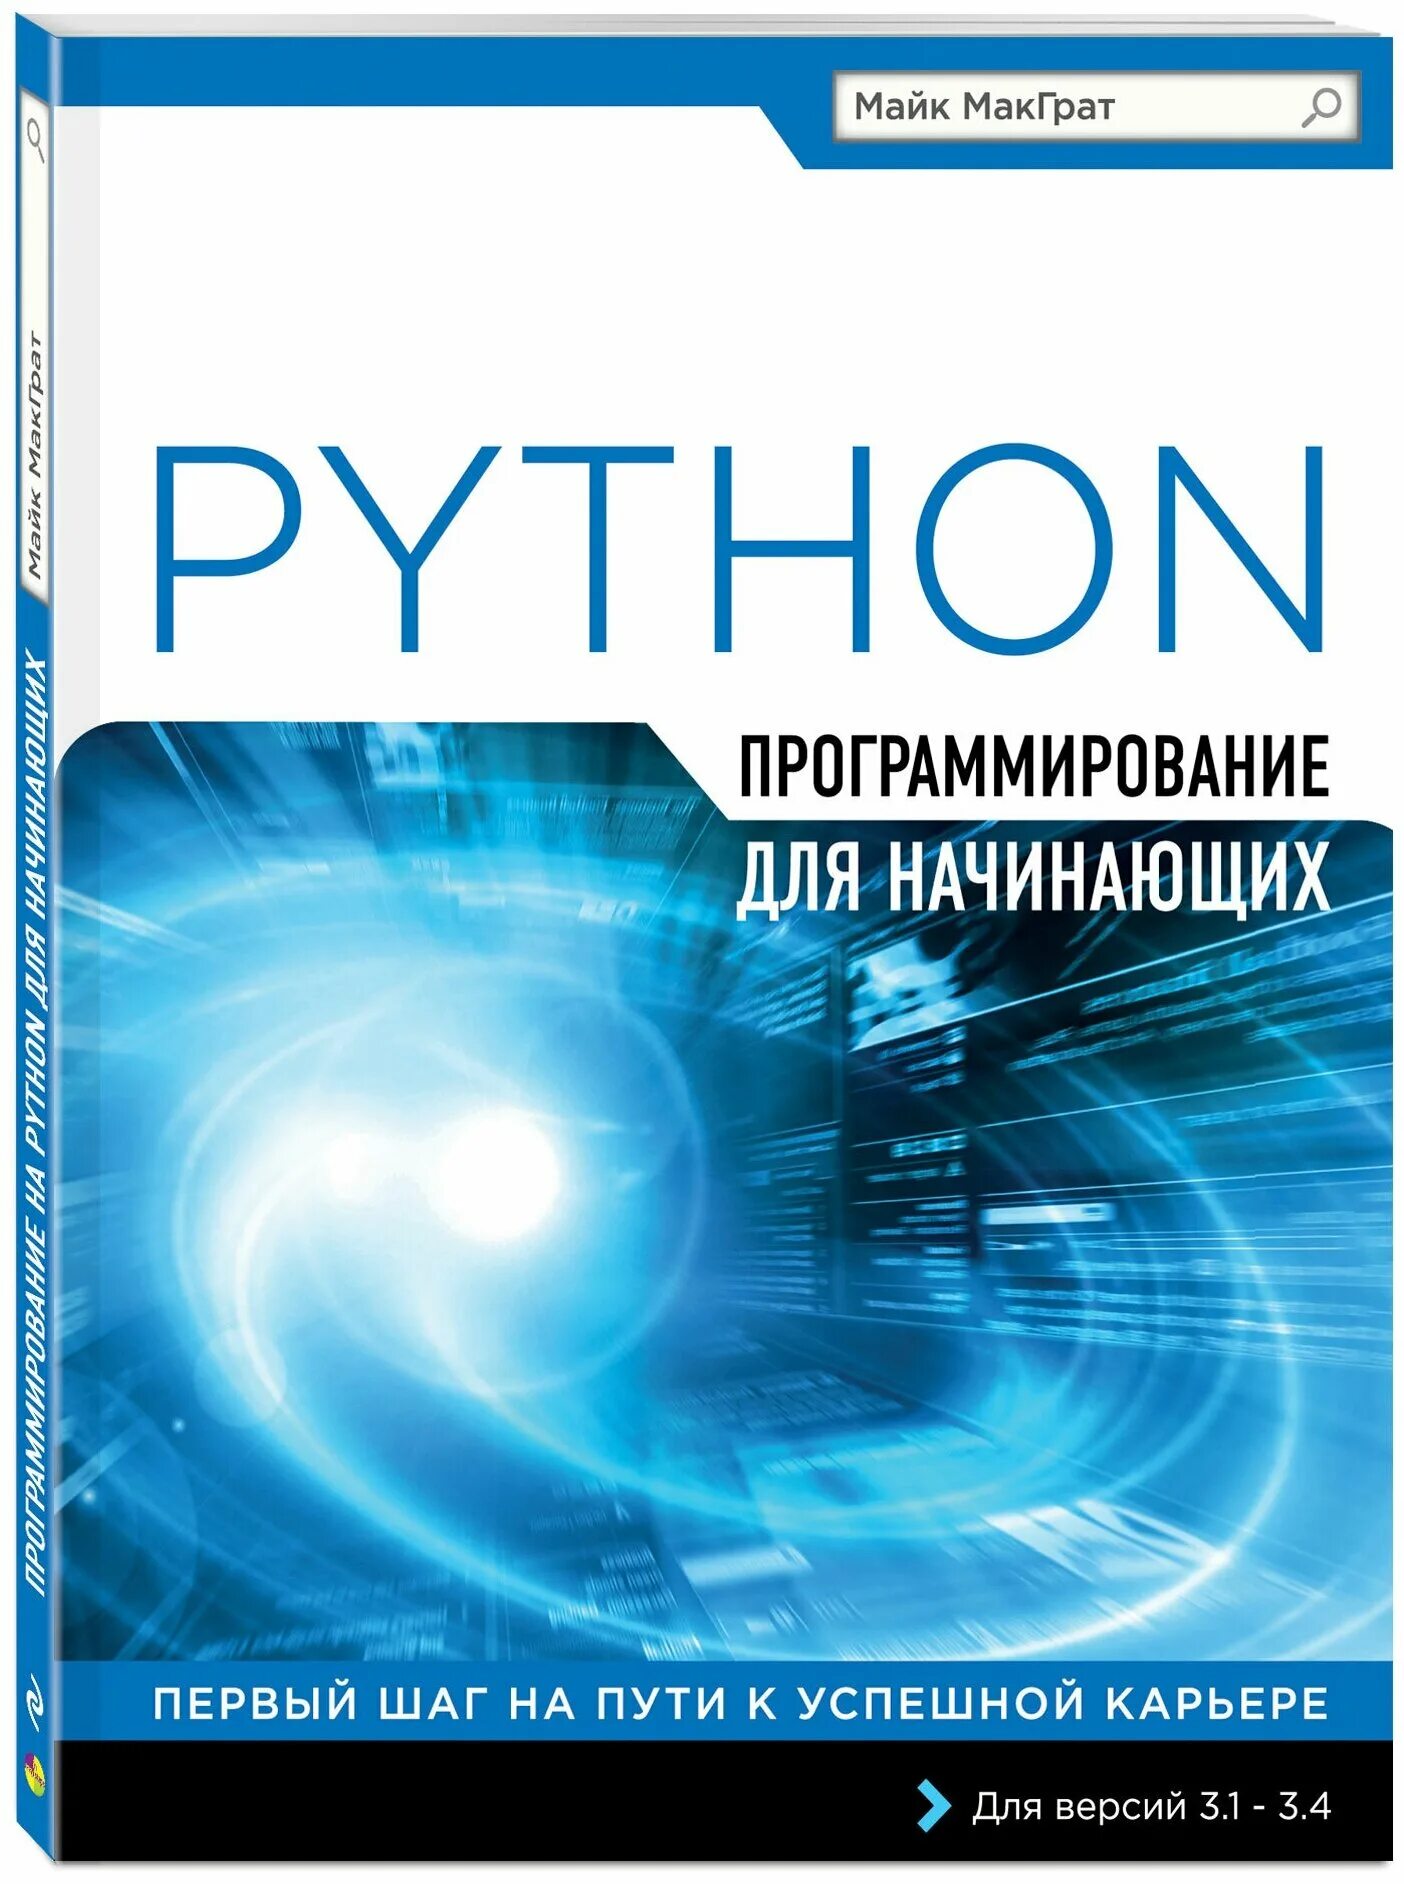 Питон книга программирование. Книги по программироваги. Книги про программирование. Книжки по программированию. Программирование для начинающих.